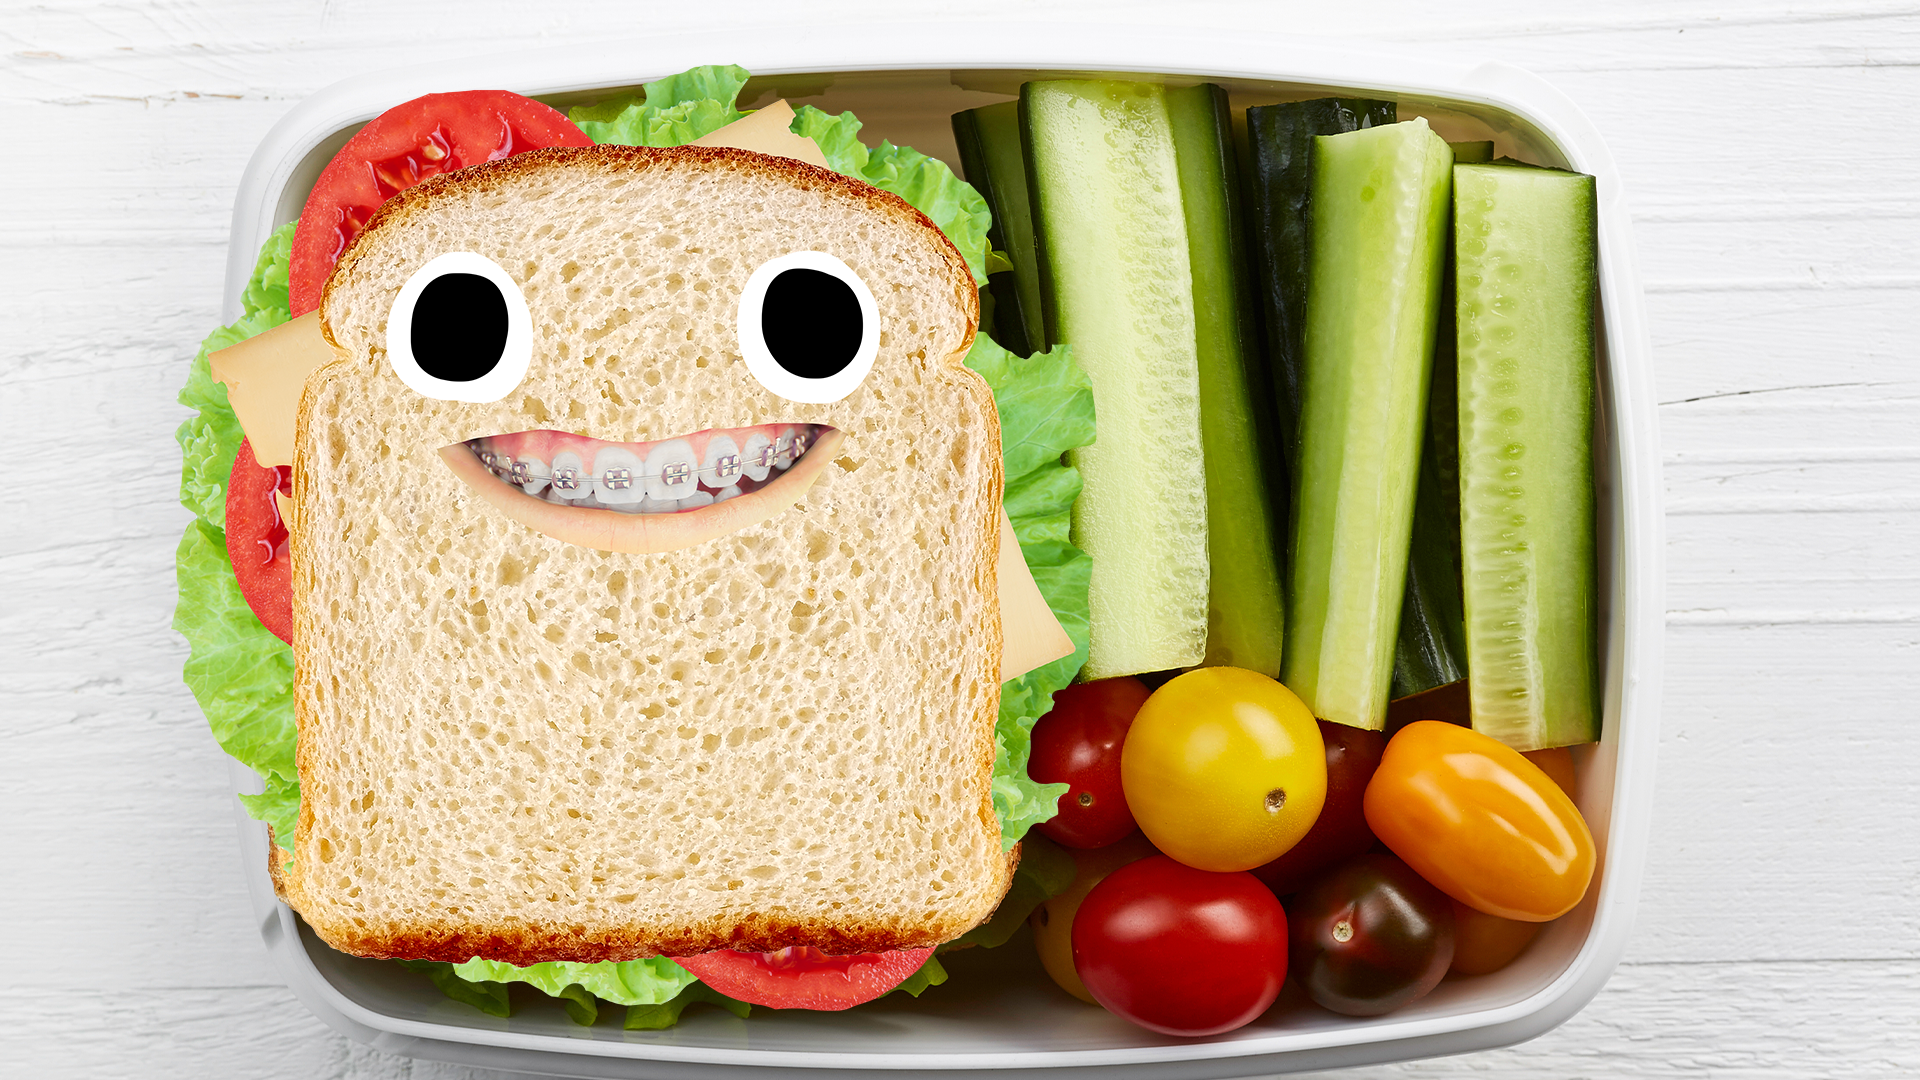 Goofy sandwich in packed lunch